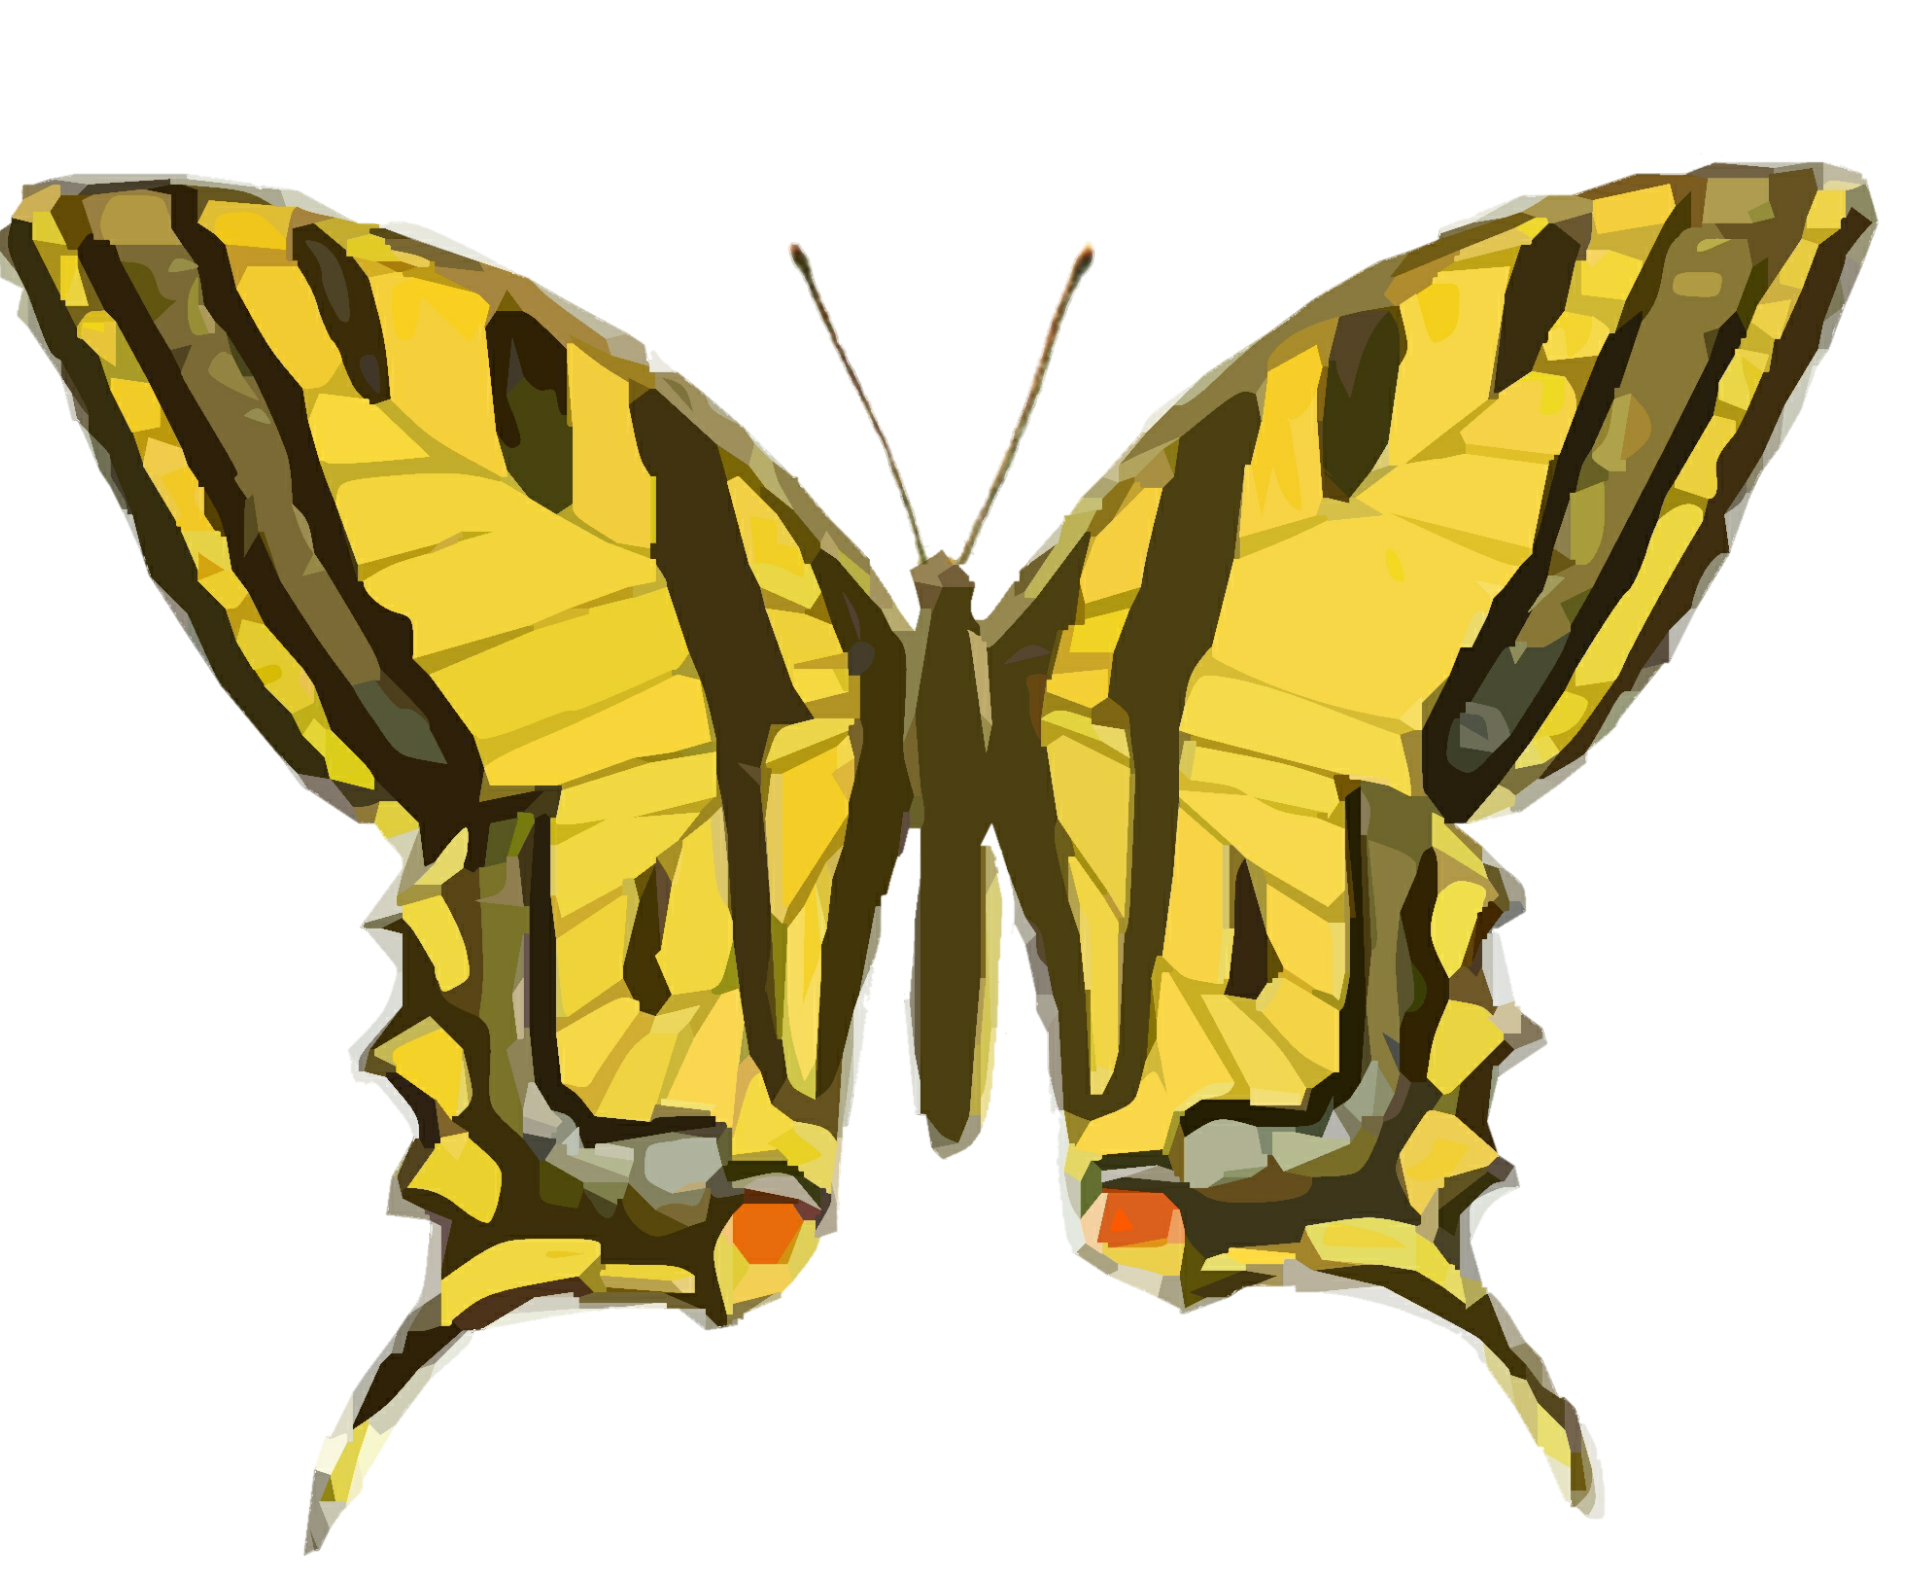 Moth clipart vintage, Moth vintage Transparent FREE for download on